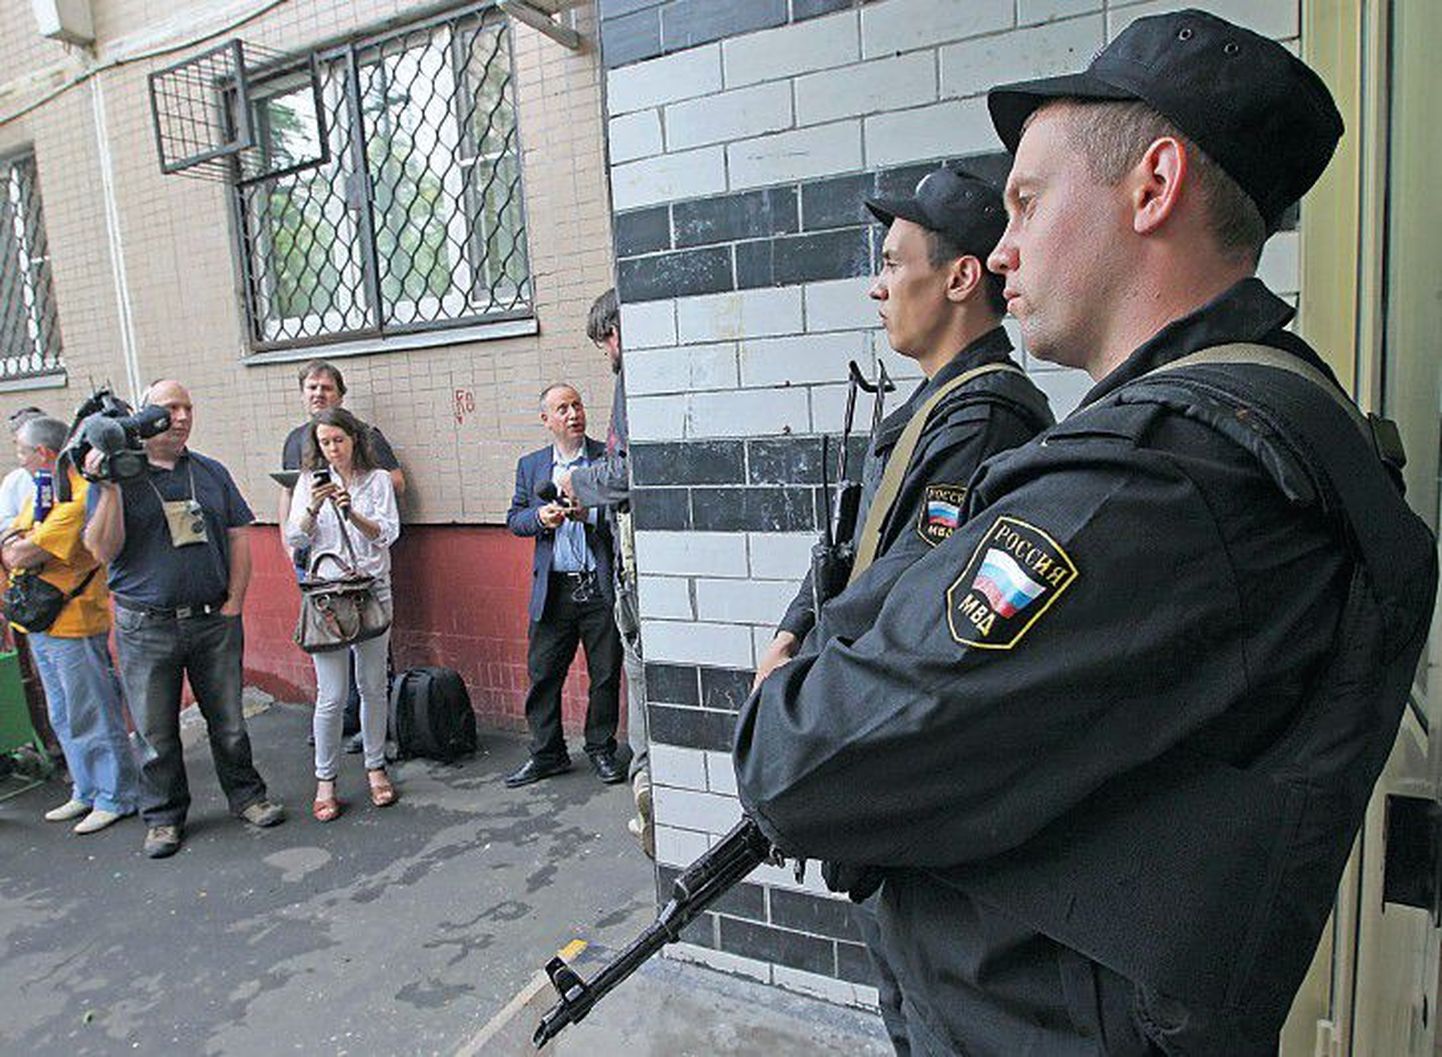 Обыск в квартире одного из лидеров оппозиции Алексея Навального, который живет в Марьино, продолжался весь вчерашний день, вход в дом охраняли мужчины с автоматами.